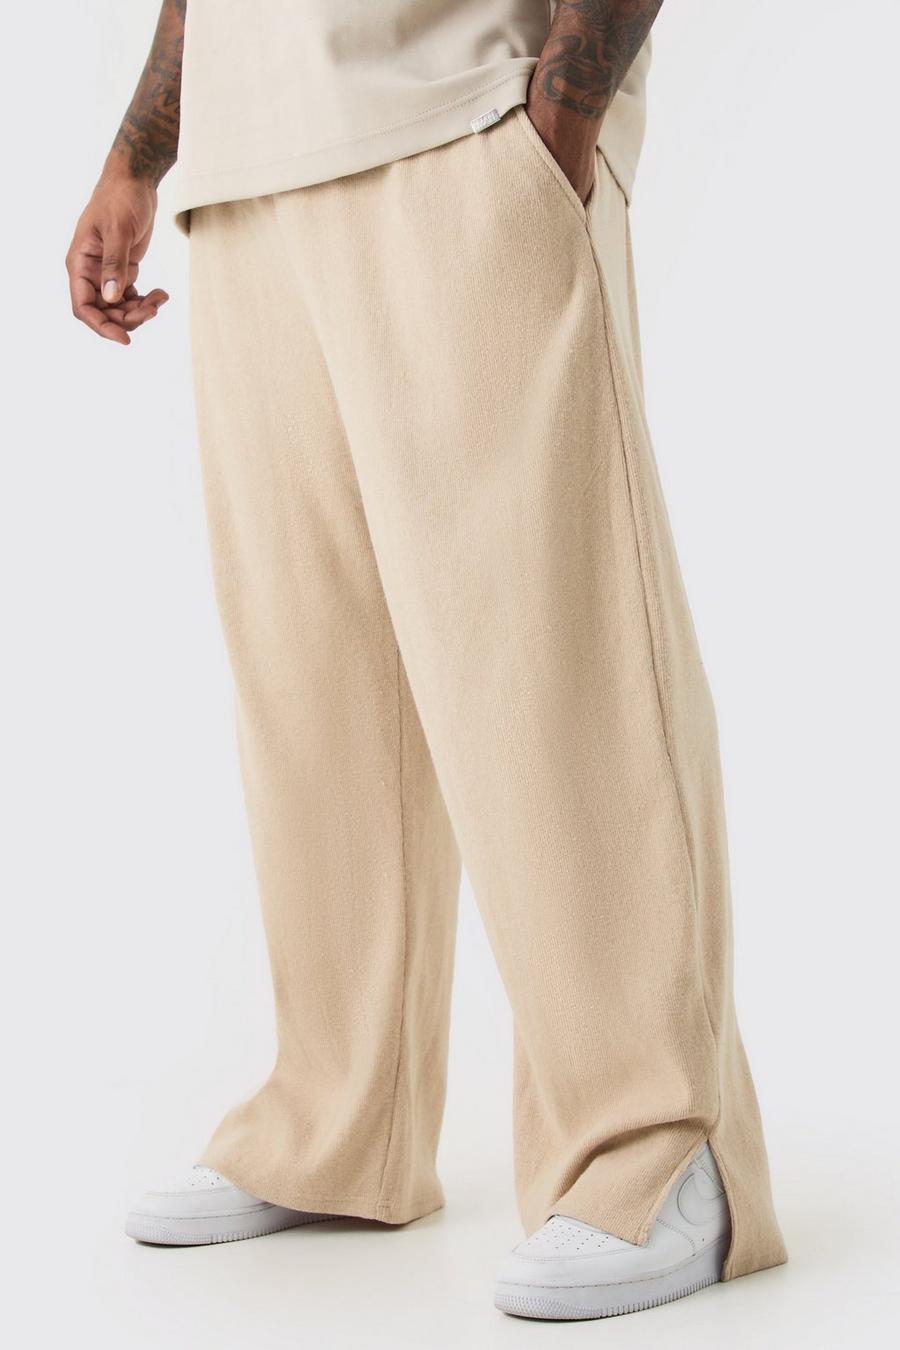 Pantaloni tuta Plus Size a coste spazzolate rilassate con spacco sul fondo, Stone